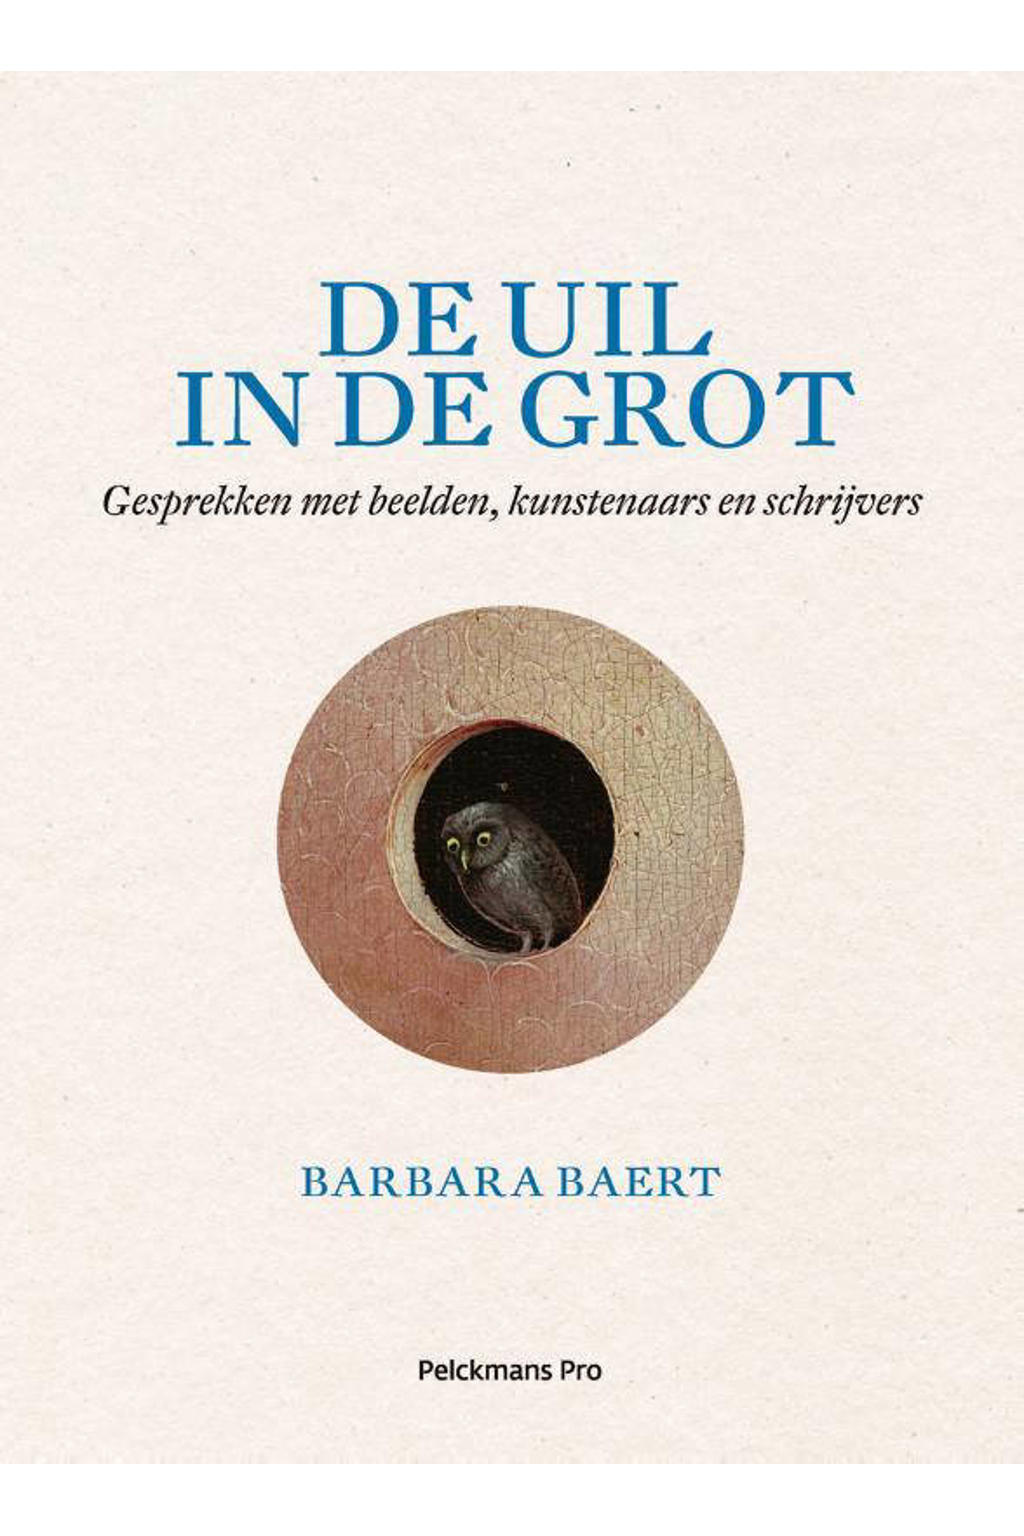 De uil in de grot - Barbara Baert